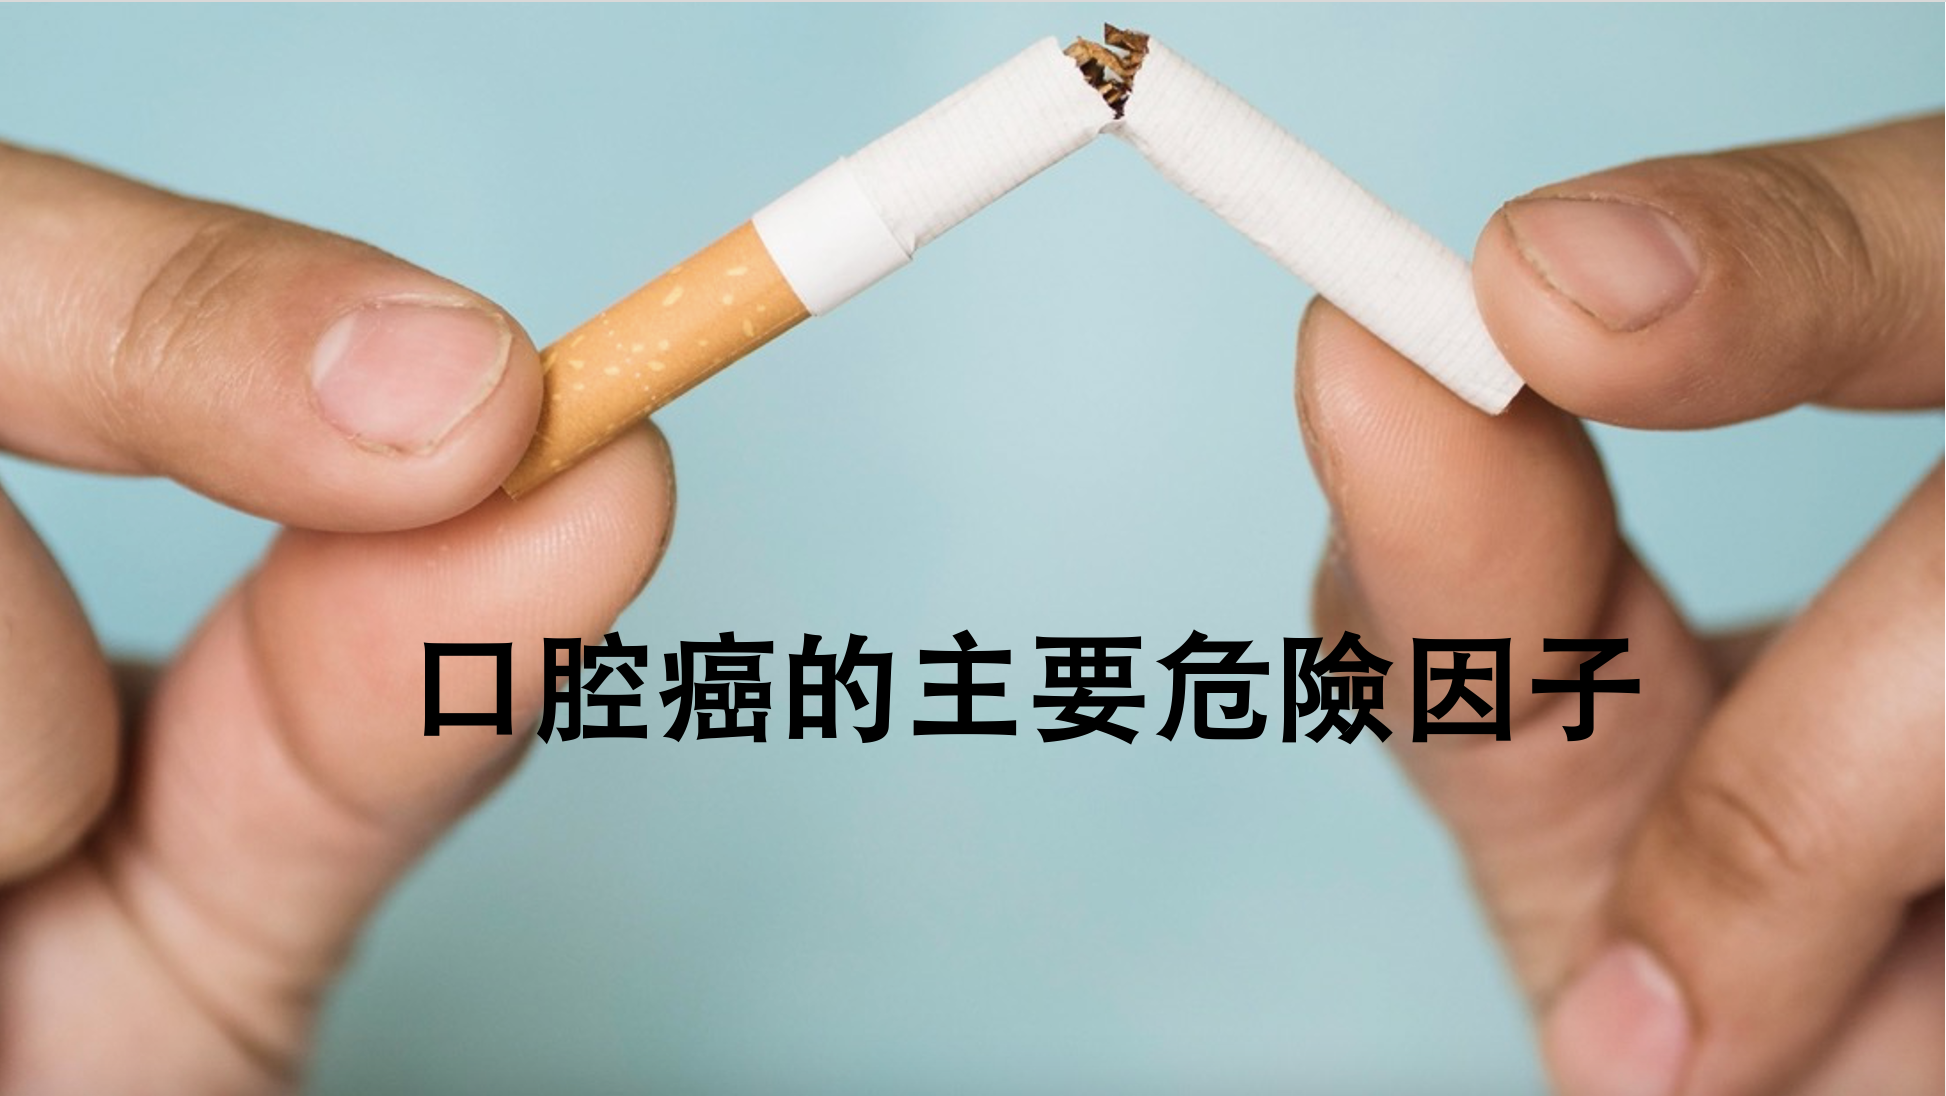 Nguy cơ mắc bệnh nha chu cao do hút thuốc lá, cần bỏ thuốc để bảo vệ sức khỏe răng miệng